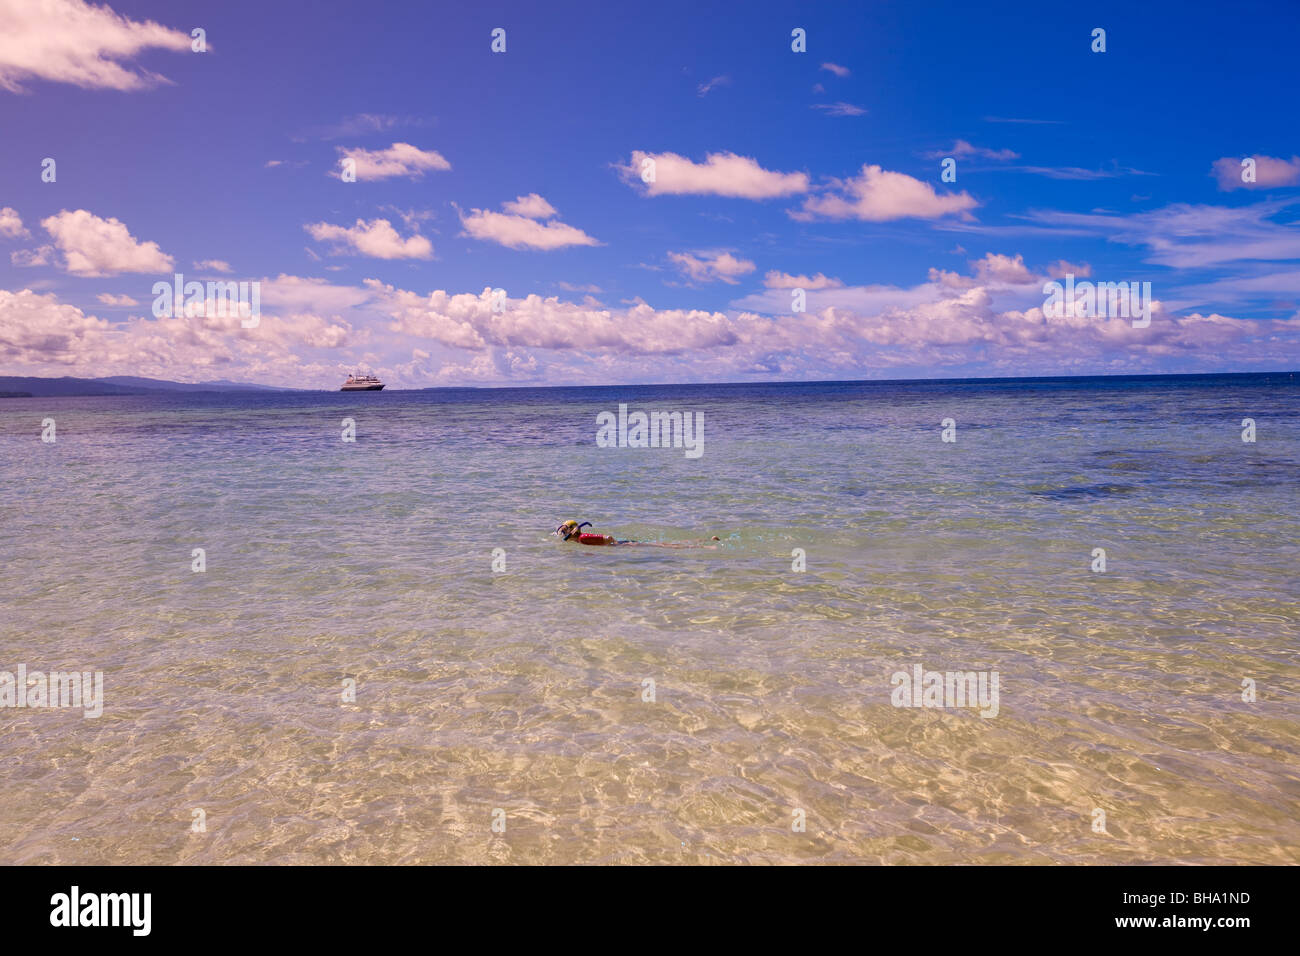 Une personne dans l'eau de mer claire tubas avec vue sur l'horizon bleu Banque D'Images